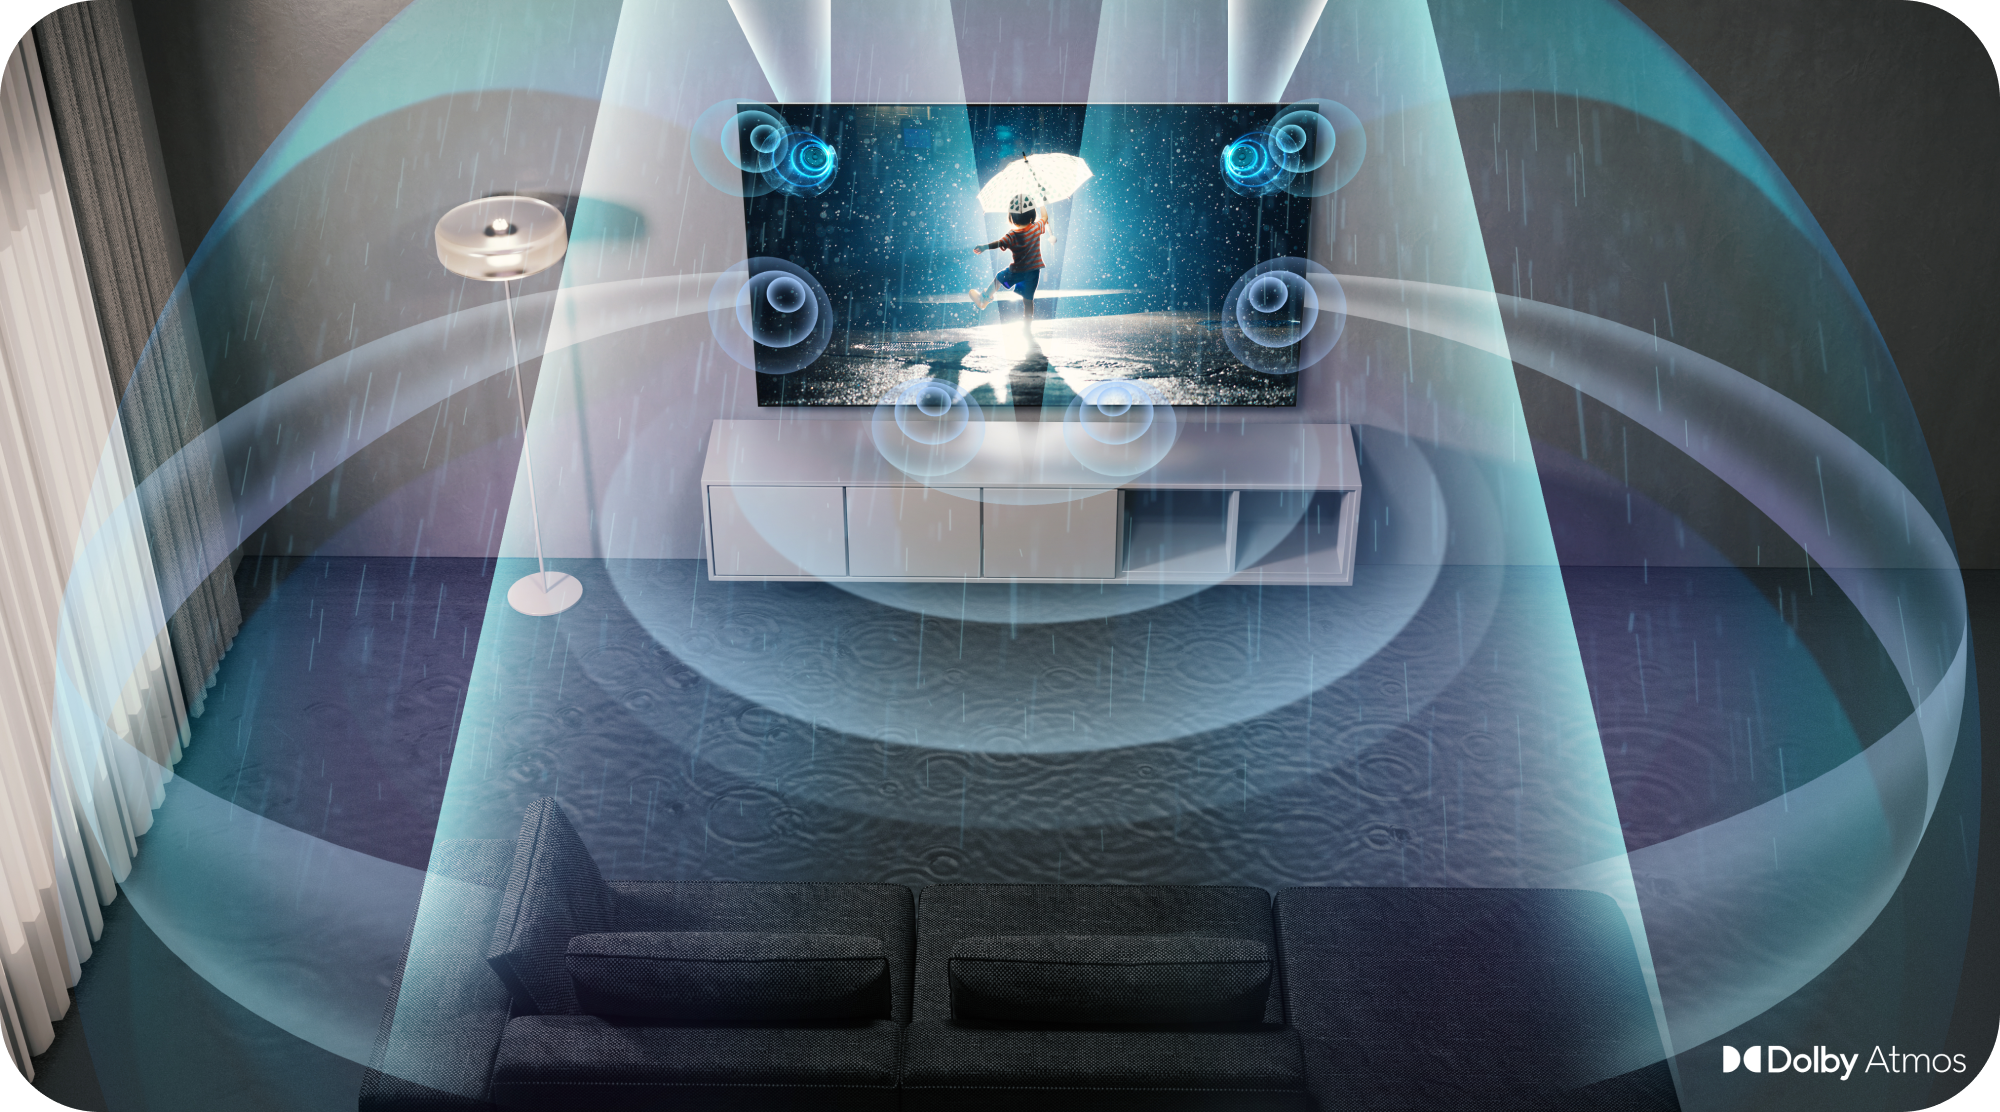 Samsung TV med Dolby Atmos og lydbølger som blir illustrert rundt i stua